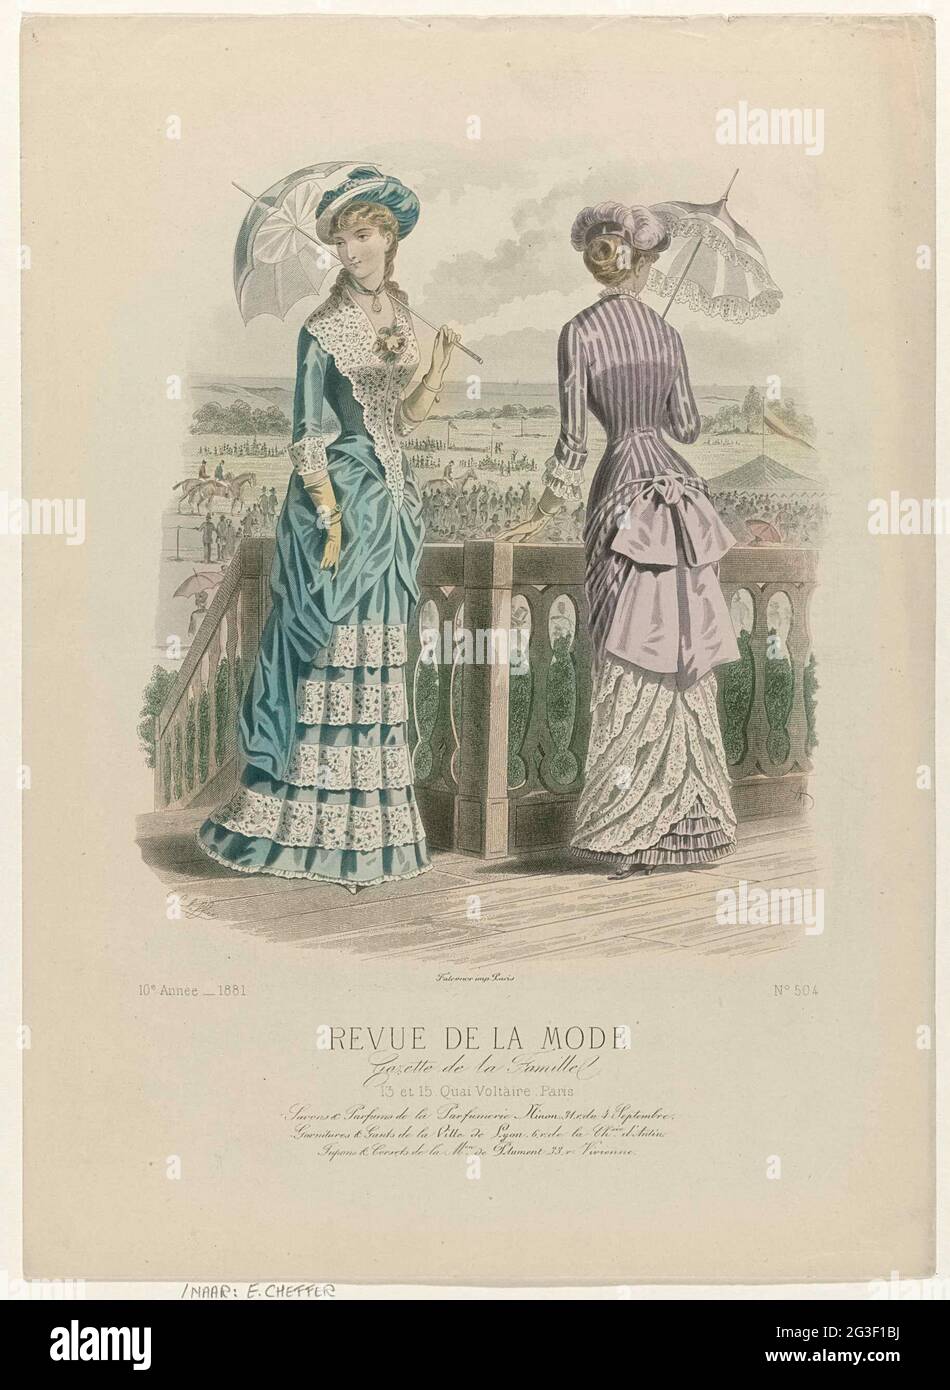 Revue de la fashion, Gazette de la Famille, Dimanche 28 août 1881, 10th  Année, no. 504: Savons & Perfumes de la Parfumerie Ninon (...). Two women  with parasols, dressed in 'toiletries' for